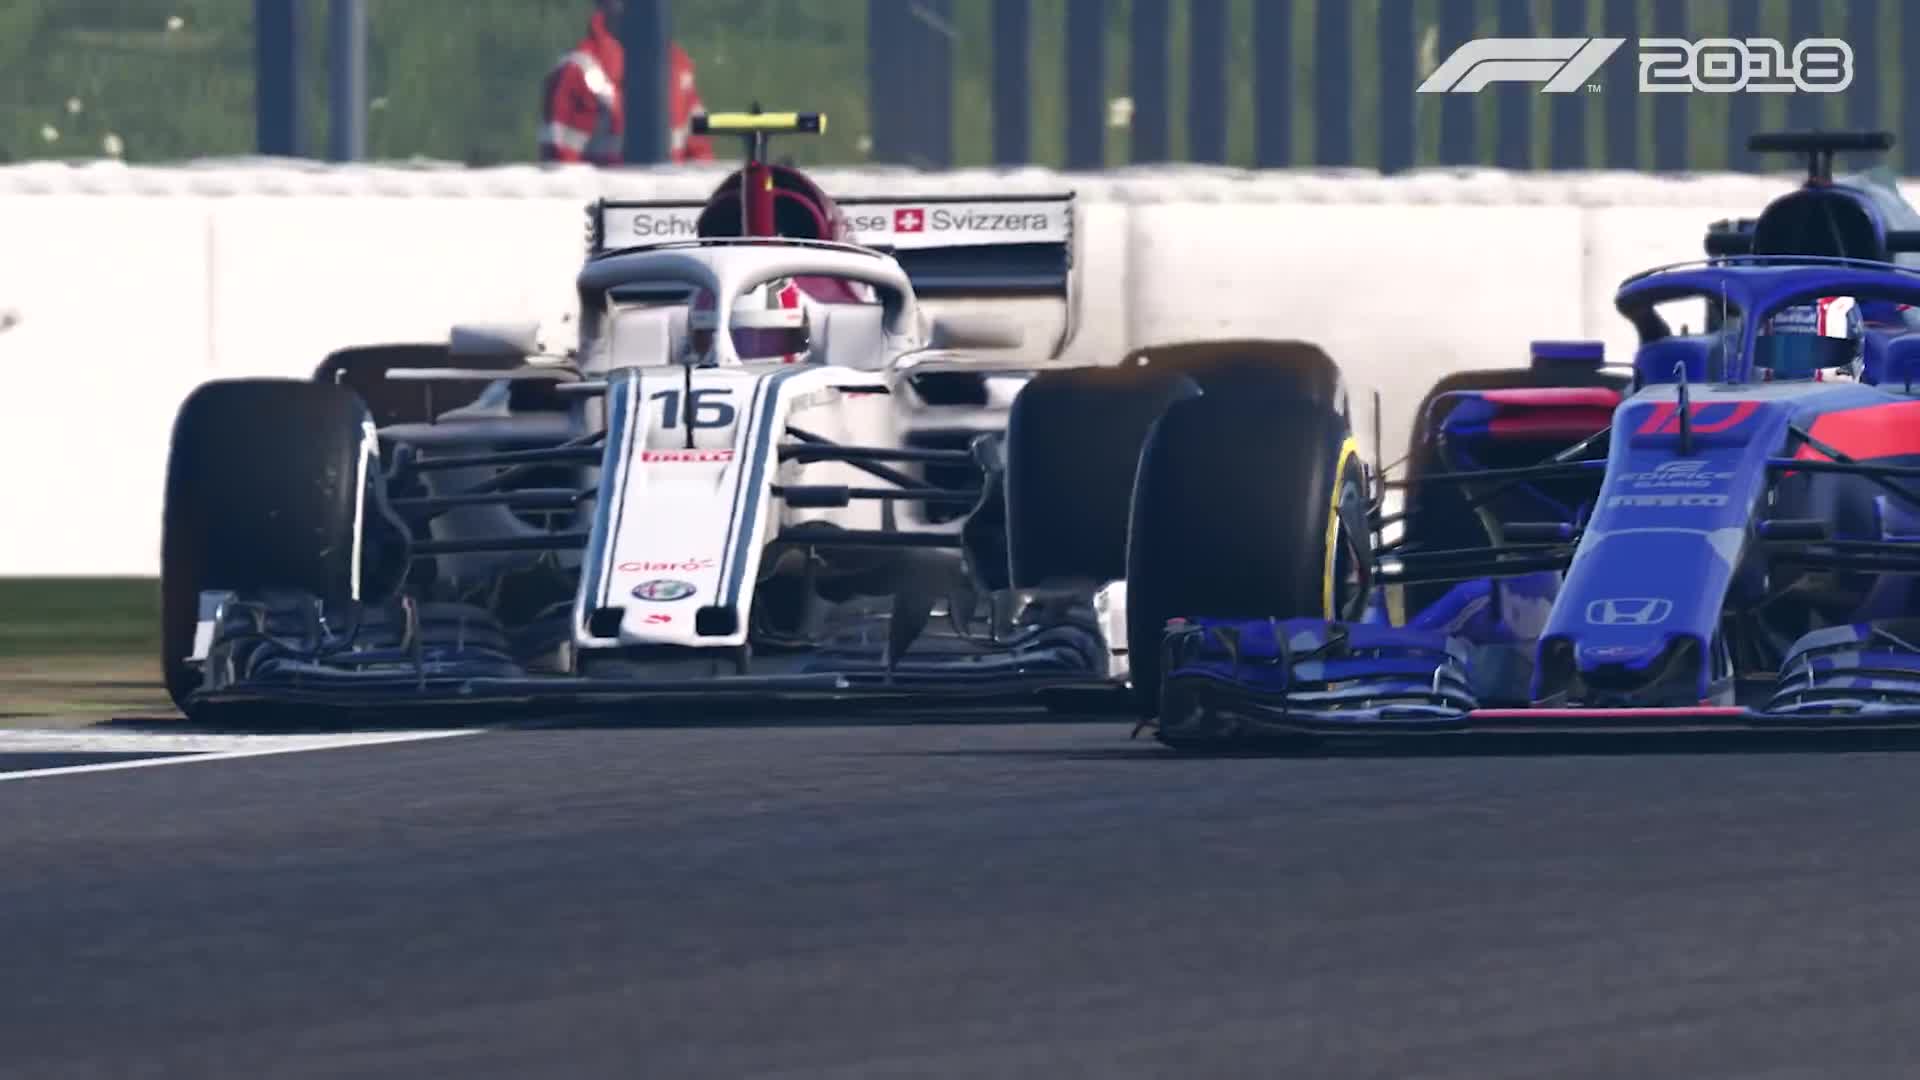 F1 2018 - druh gameplay trailer